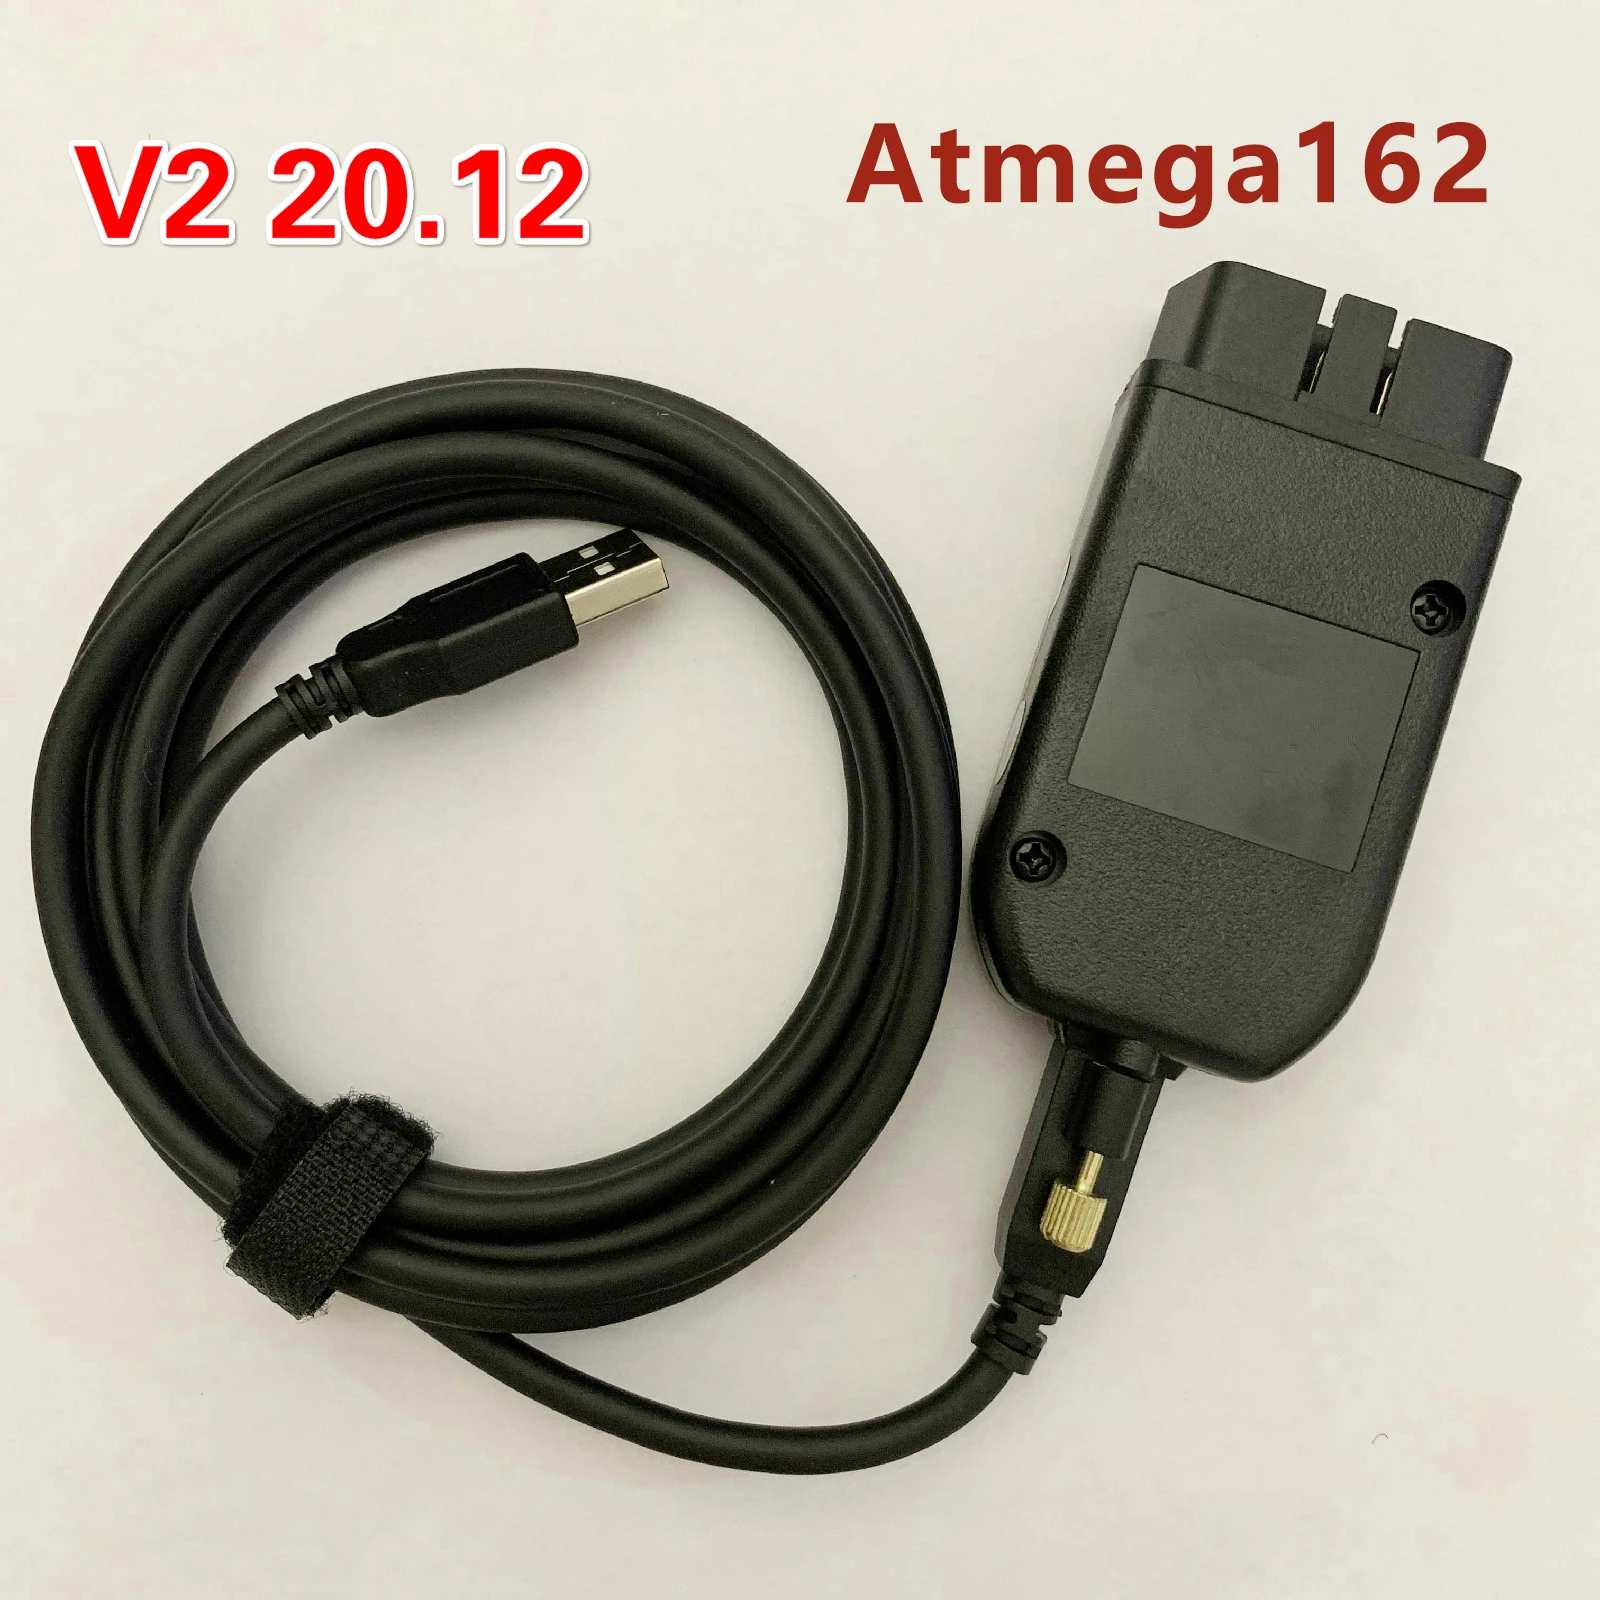 Тестеры WESHEU VCDS VAG COM 20 12 HEX CAN USB интерфейс для VW AUDI Skoda Seat 4 многоязычный ATMEGA162 + 16V8